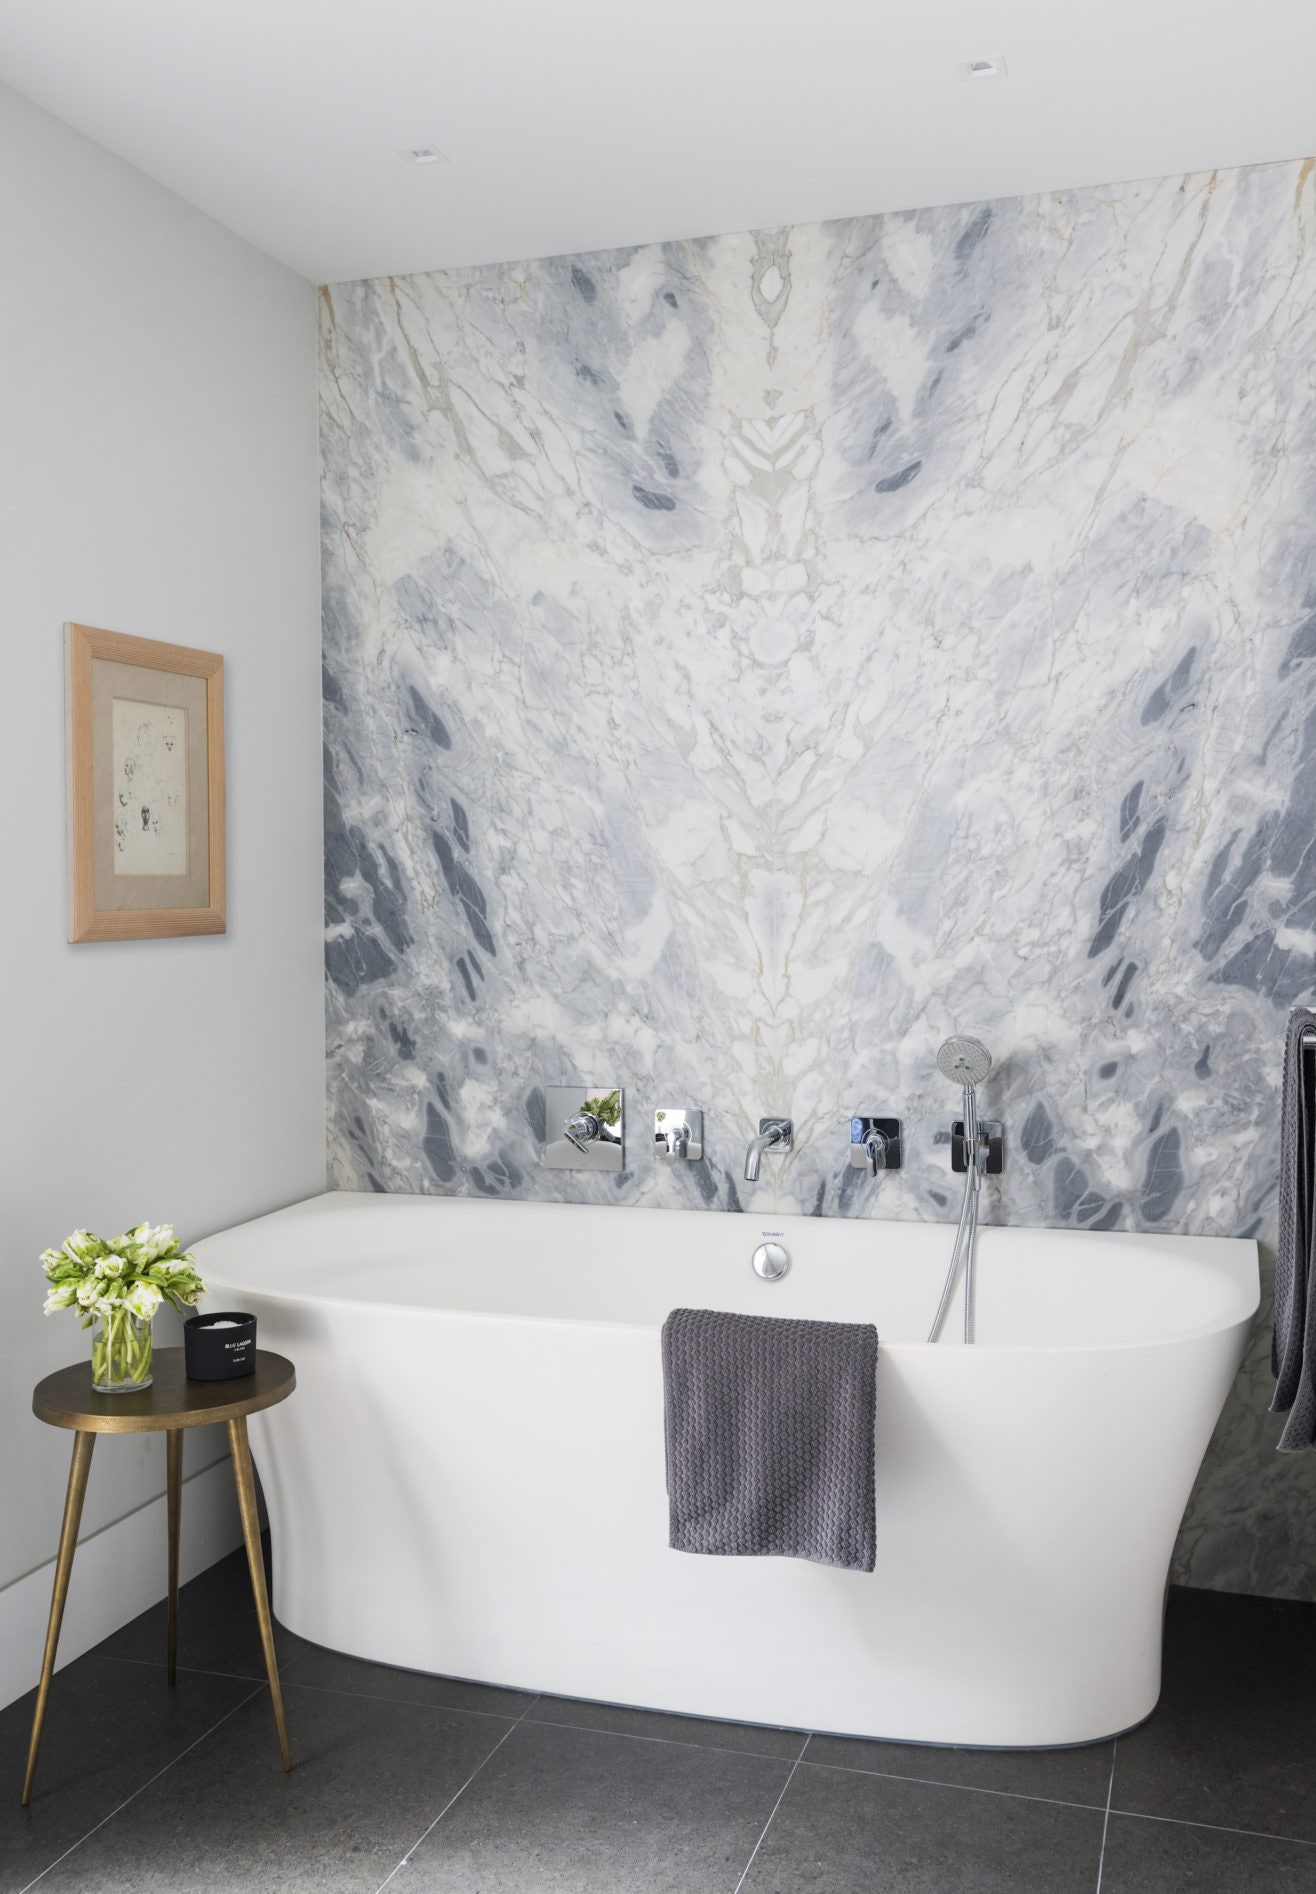 Интерьер с обложки квартира по проекту Кирилла Истомина. Главная ванная. Стена облицована мрамором.